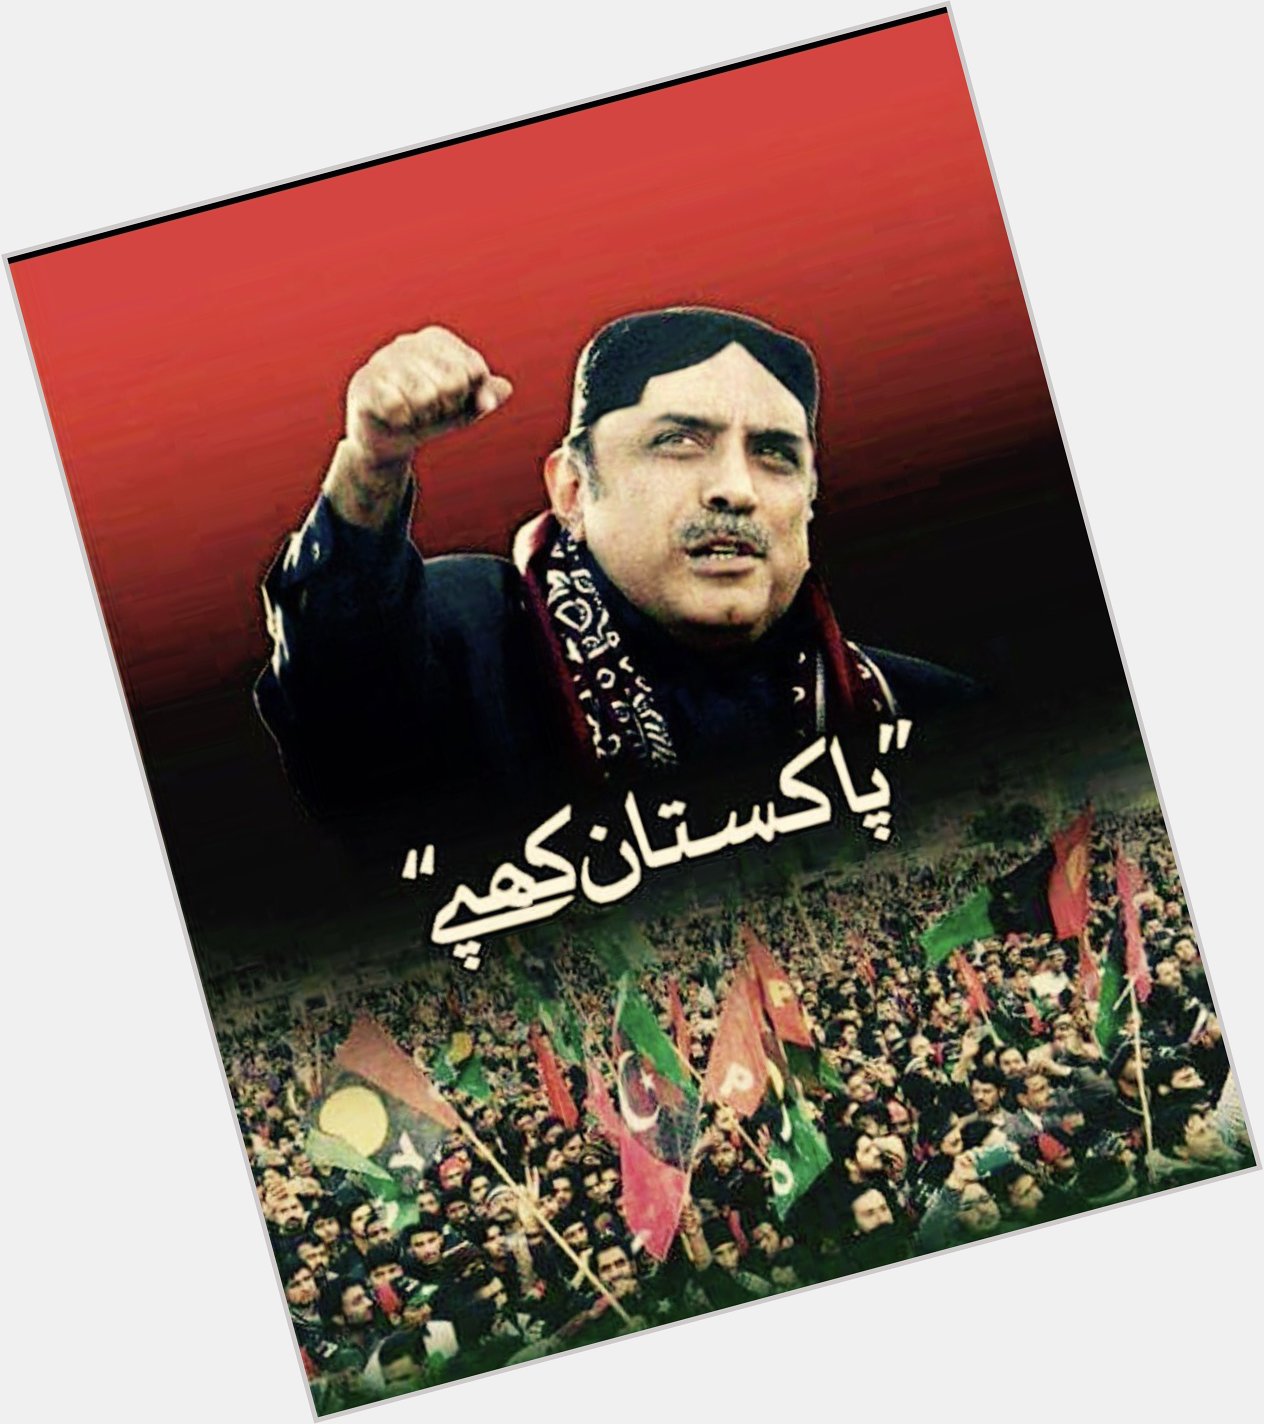 Happy birthday to Asif Ali Zardari 